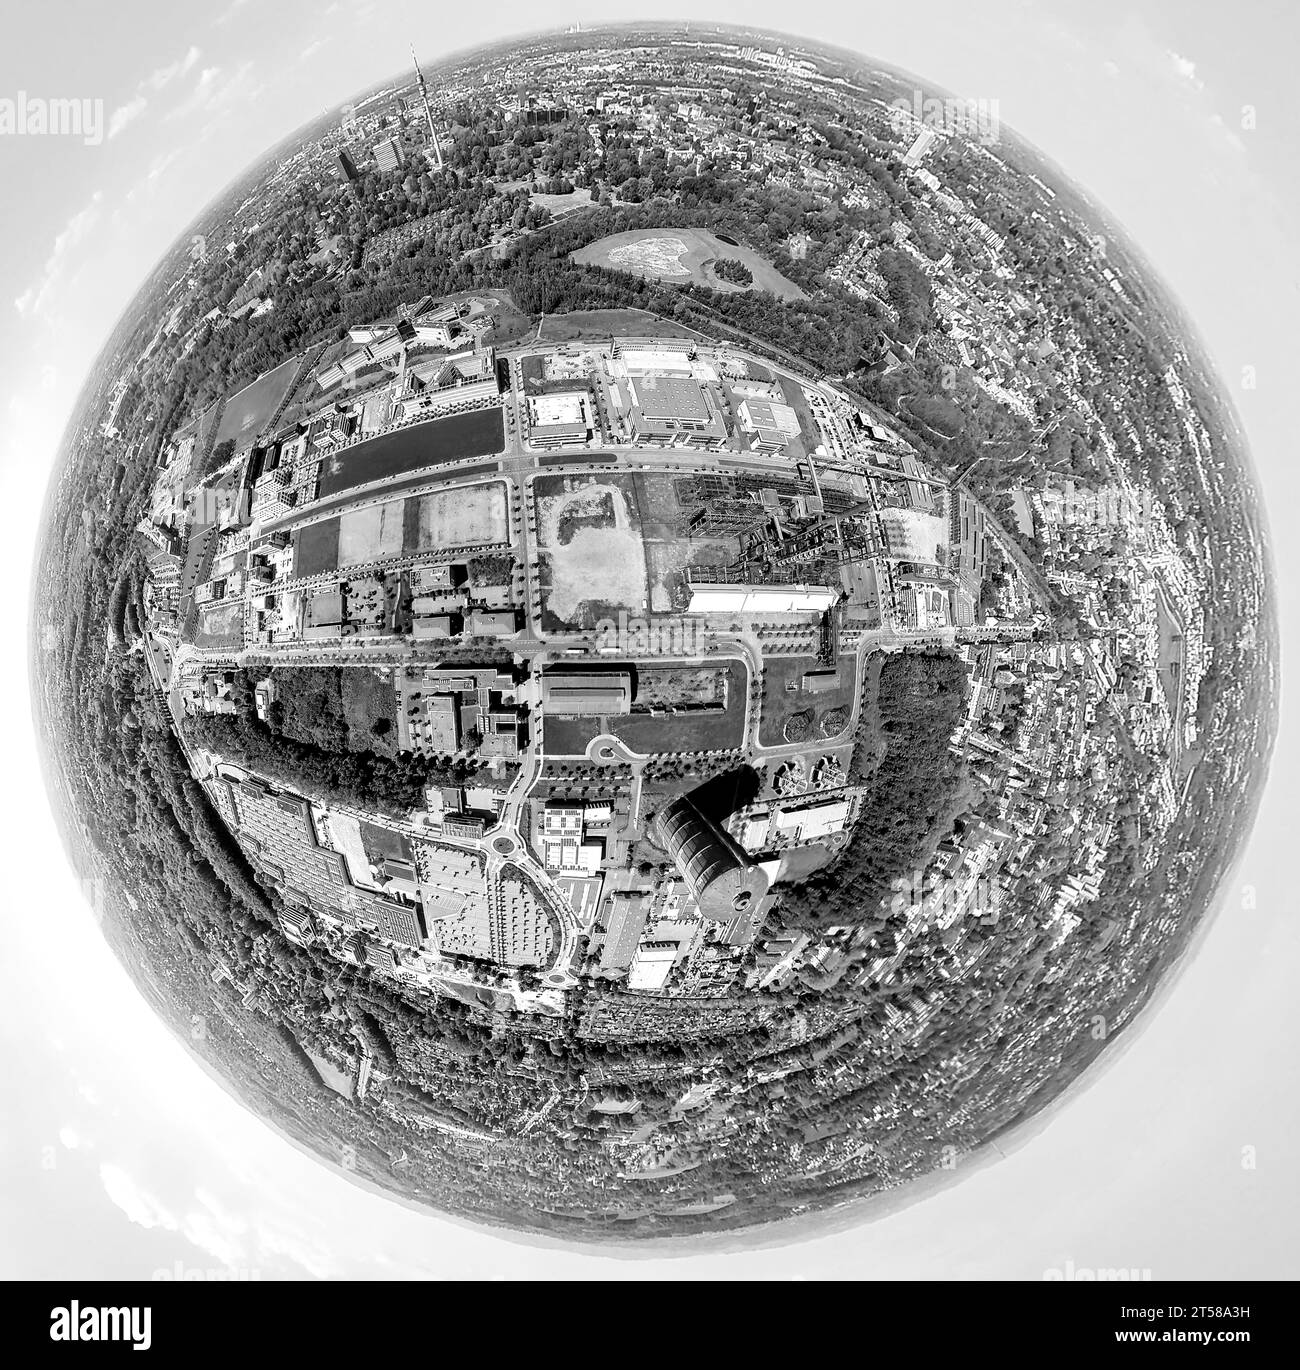 Vista aerea, area industriale Phoenix West, parco tecnologico, immagine in bianco e nero, globo terrestre, immagine fisheye, immagine a 360 gradi, Hörde, Dortmund, Ruhr Foto Stock